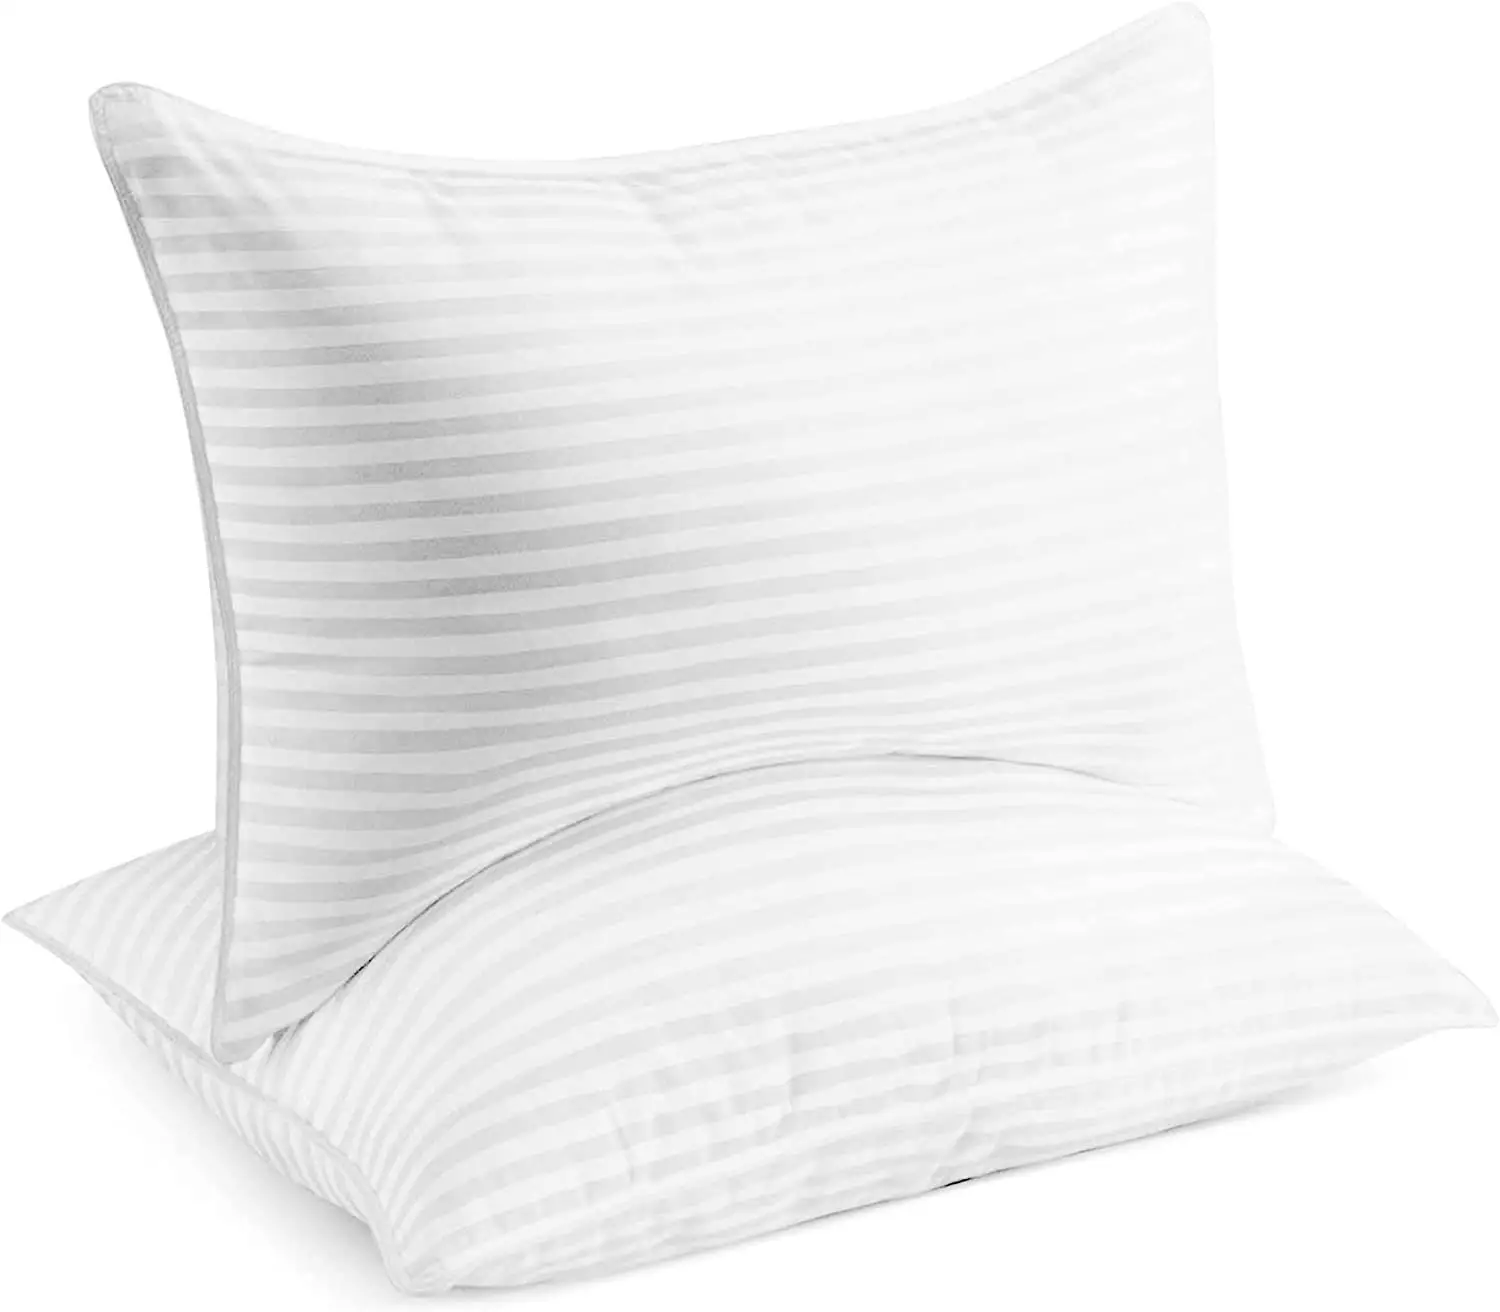 Almohada de plumón de pato blanco para dormir, almohada de hotel de 5 estrellas, de fácil limpieza, estándar 90%